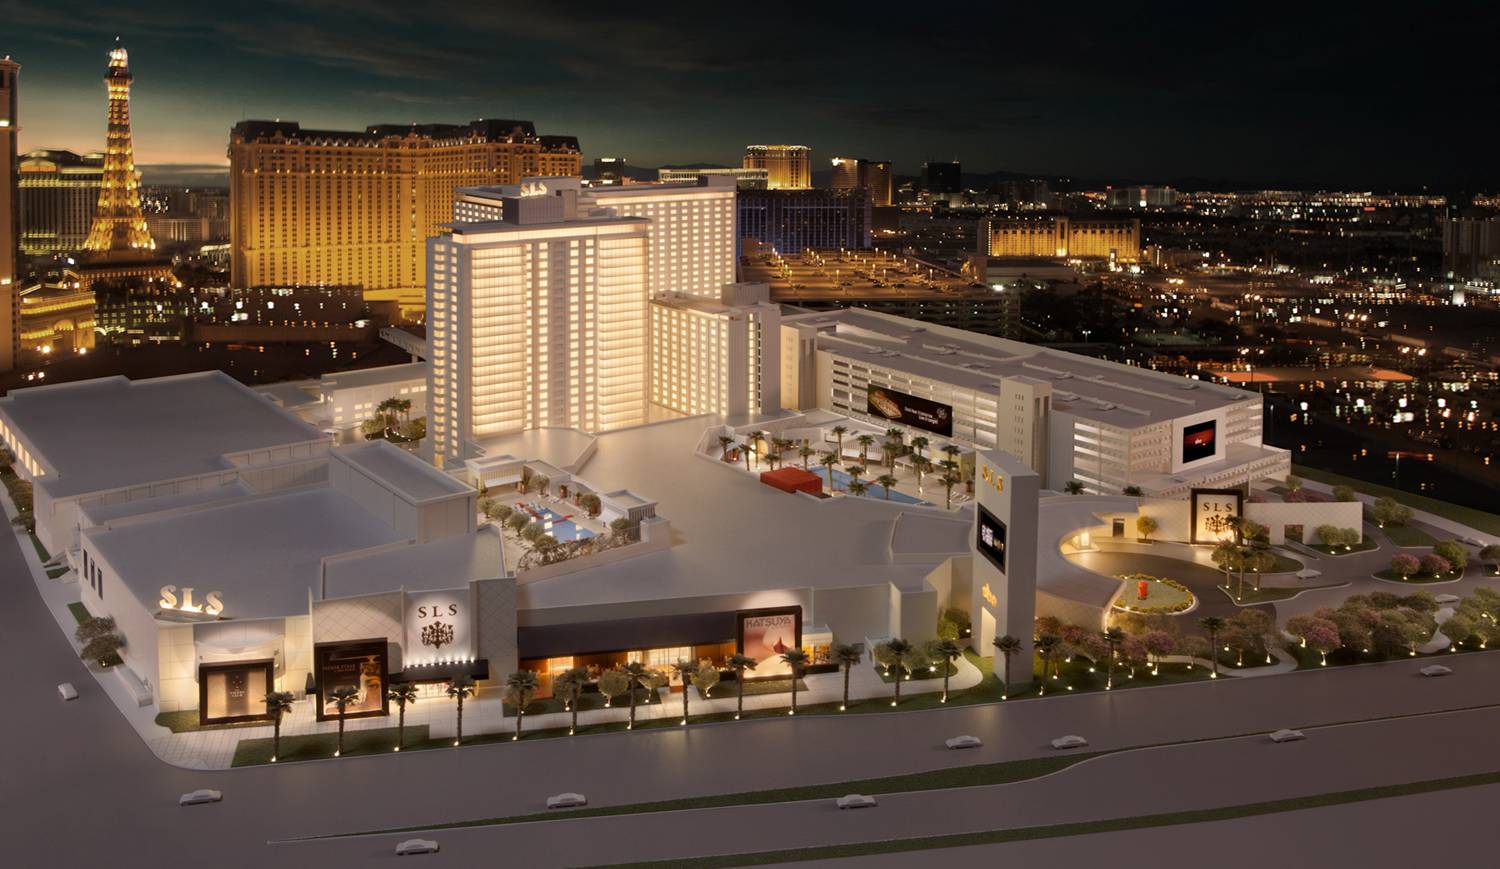 Sls Las Vegas Hotel And Casino